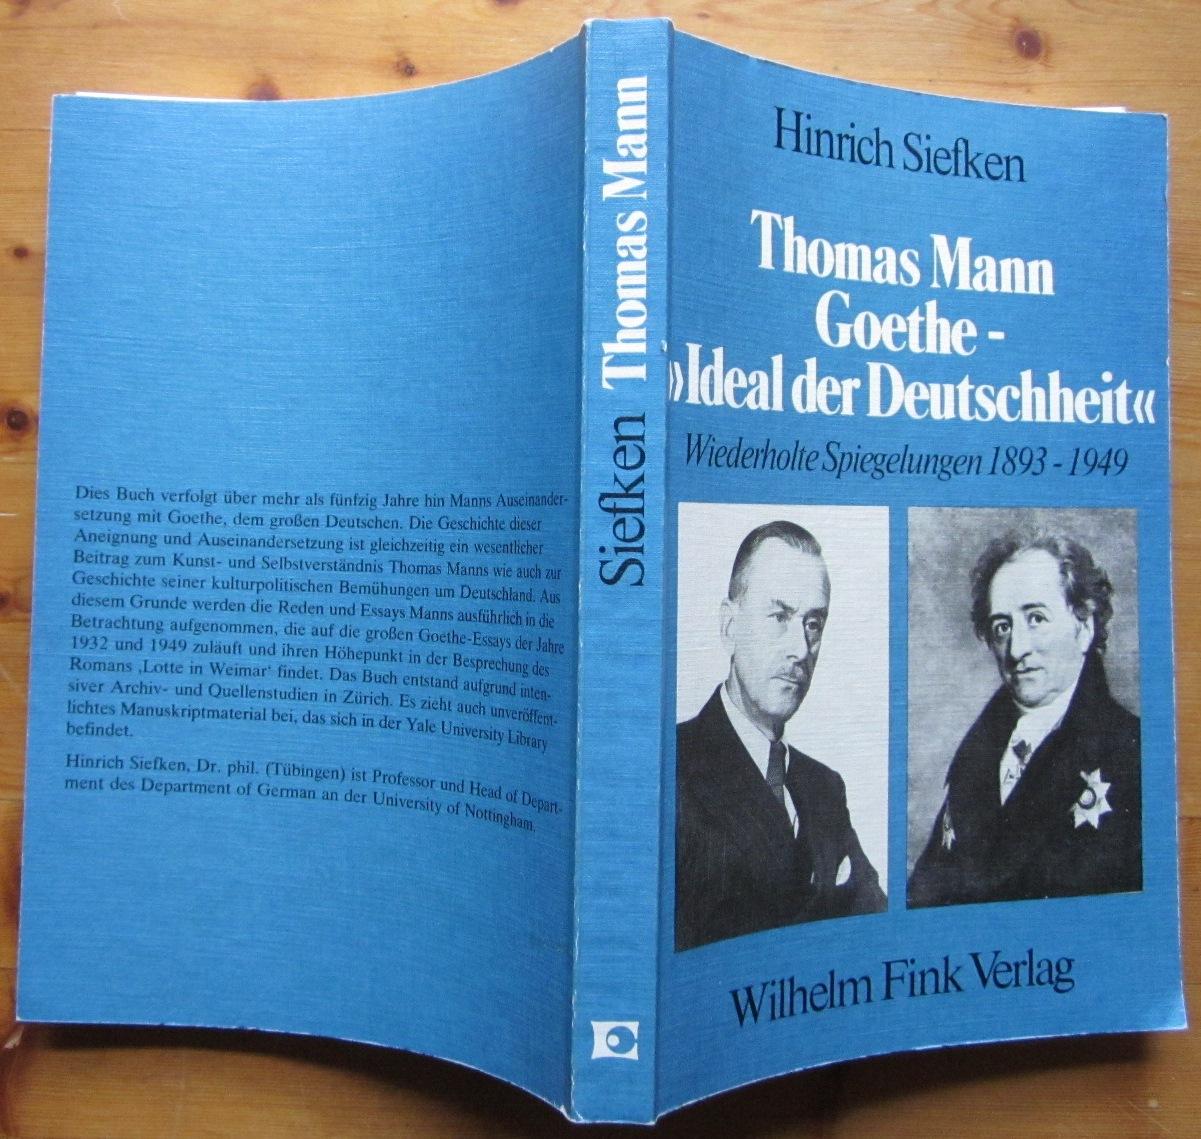 Thomas Mann: Goethe - "Ideal der Deutschheit" Wiederholte Spiegelungen 1893-1949